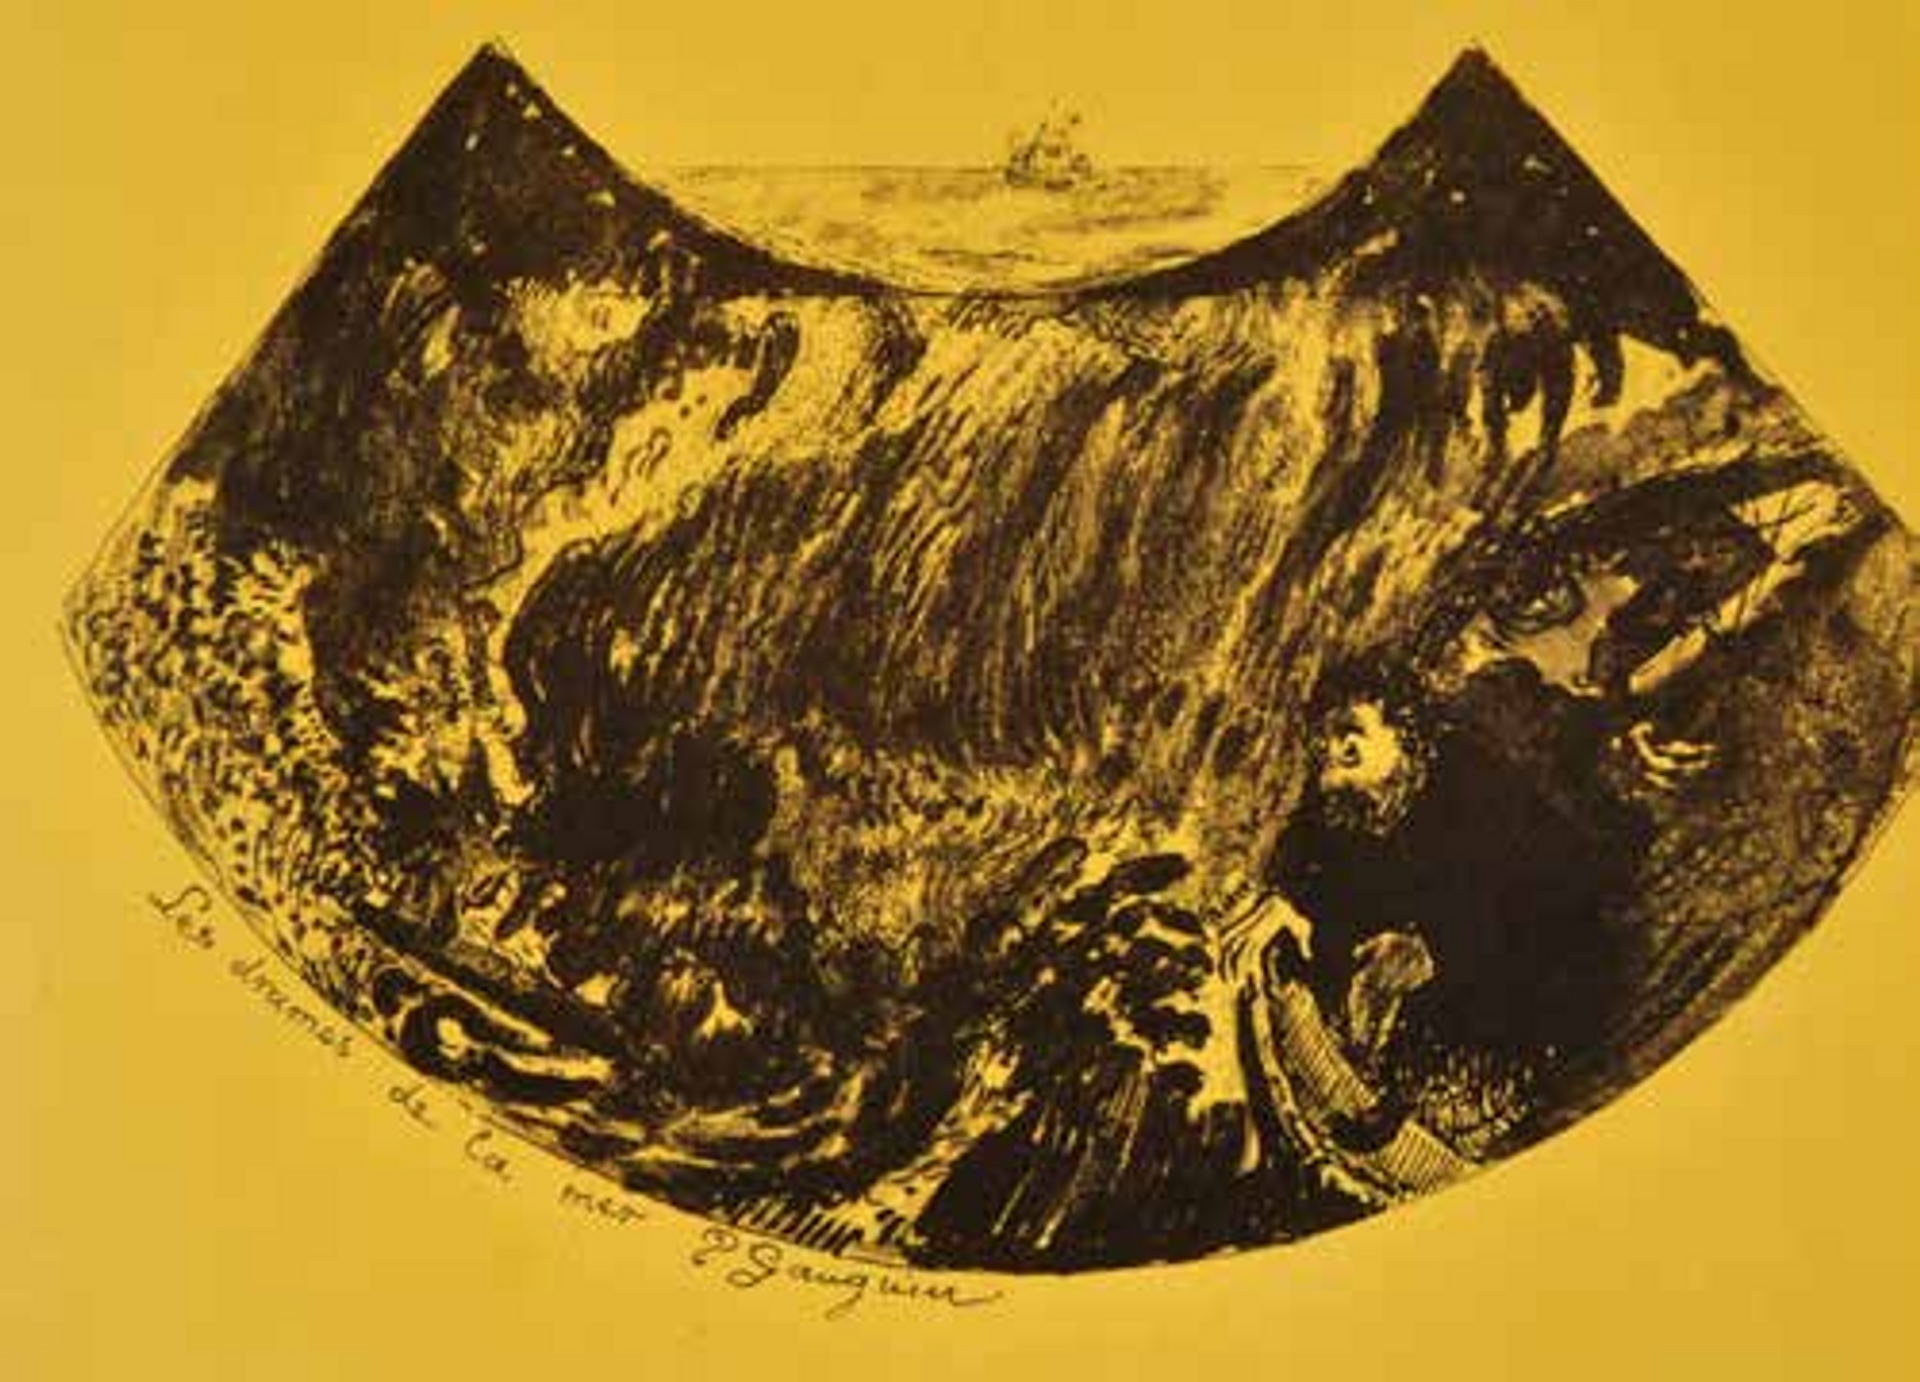 Paul Gauguin, Les Drames de la mer. Une descente dans le Maelström, 1889, zincographie sur papier jaune, 32×39,5 cm. © Musée de Pont-Aven